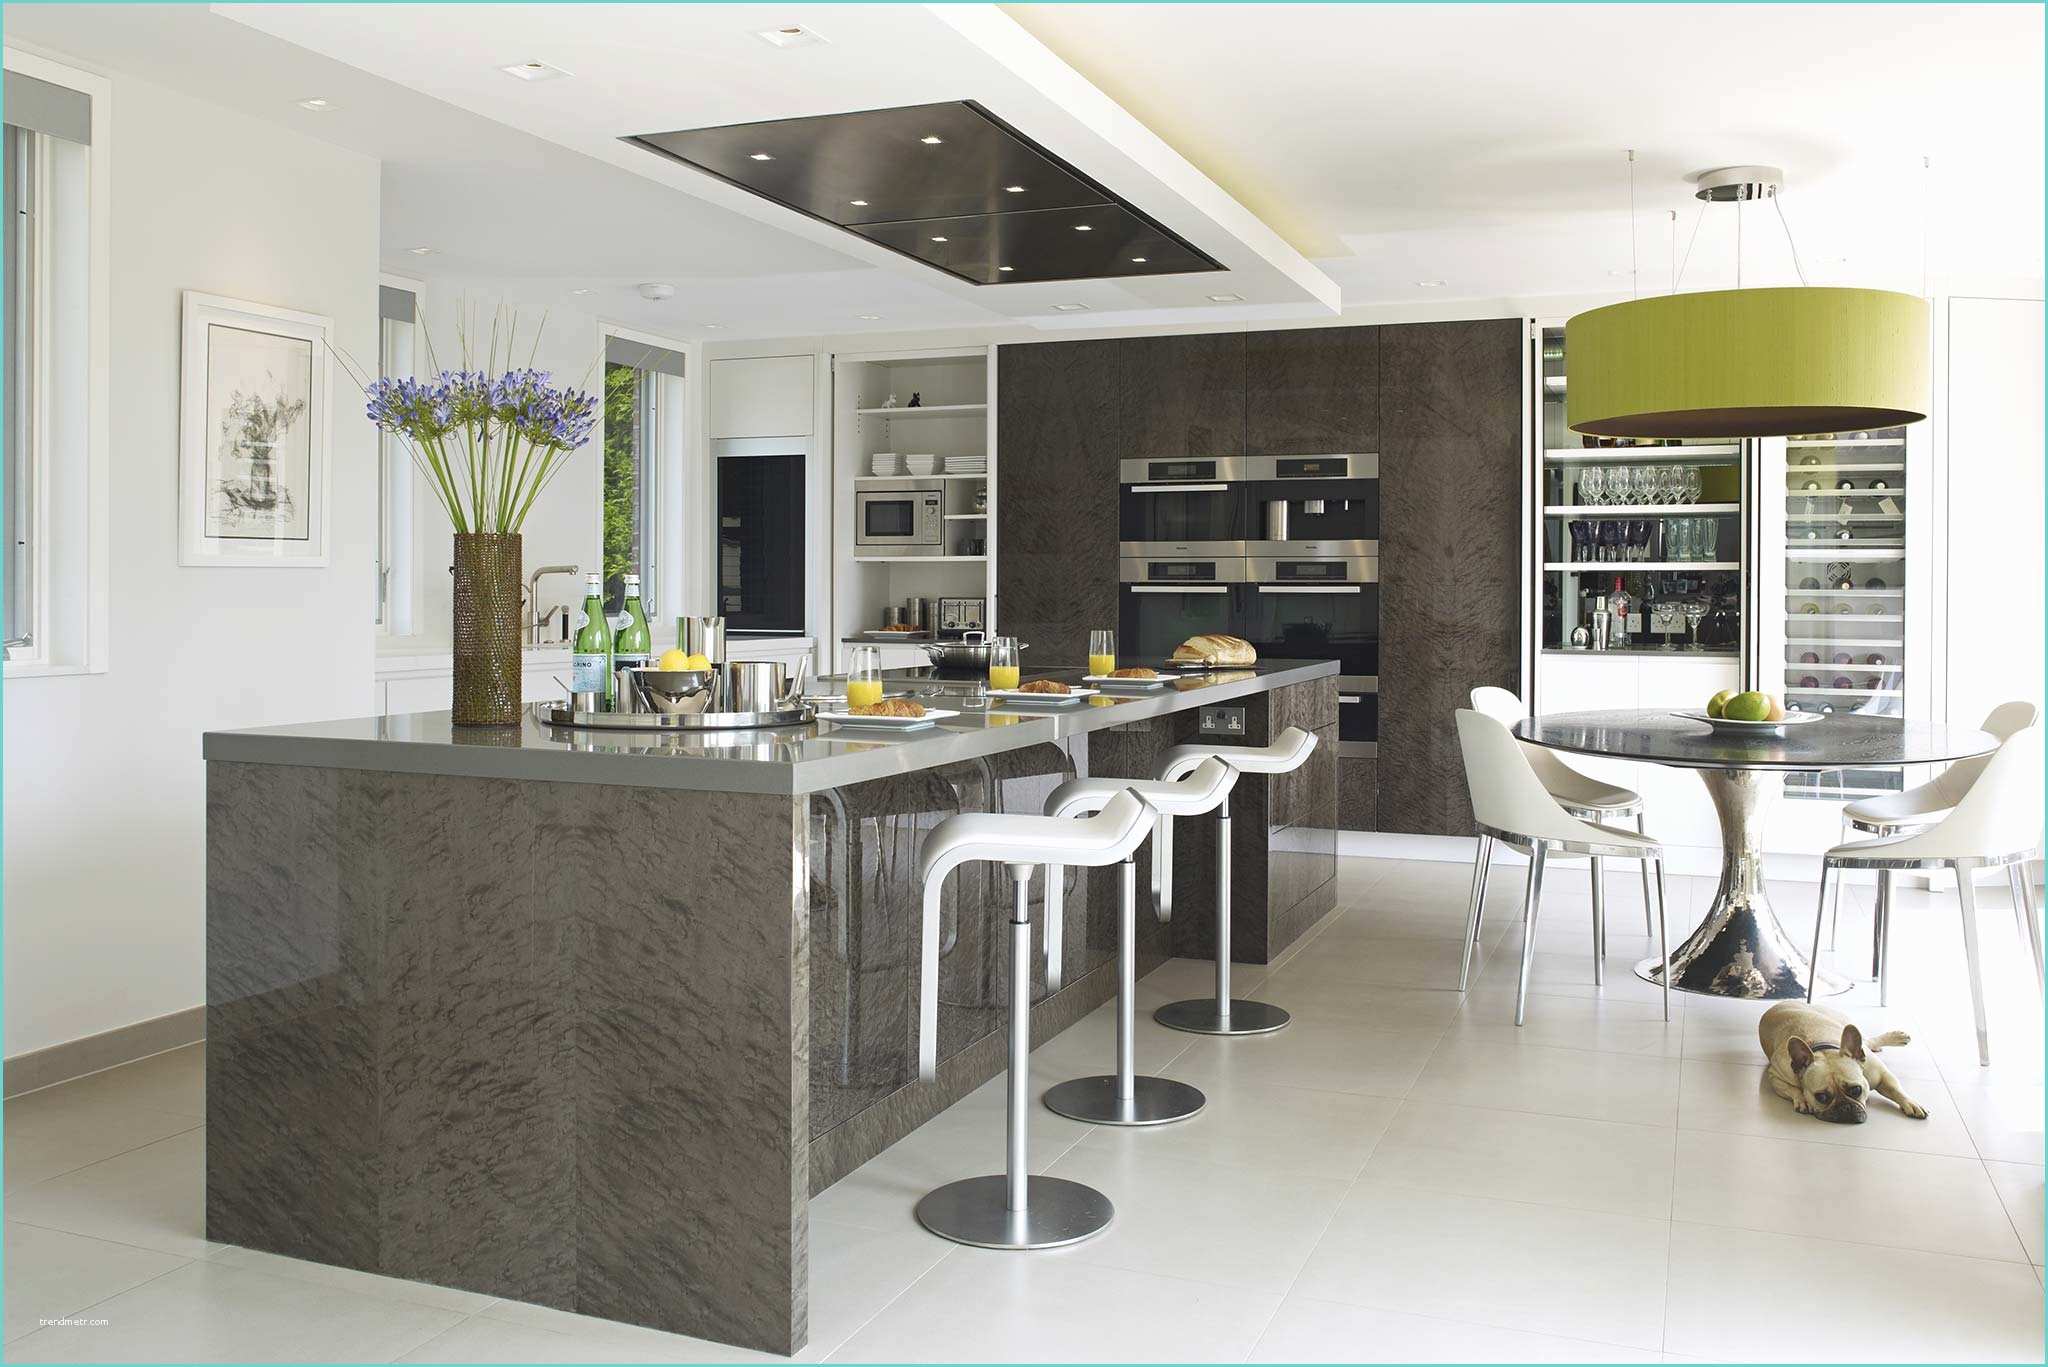 Maison Moderne De Luxe Cuisine Interieur Maison De Luxe Salon – Nancy Design